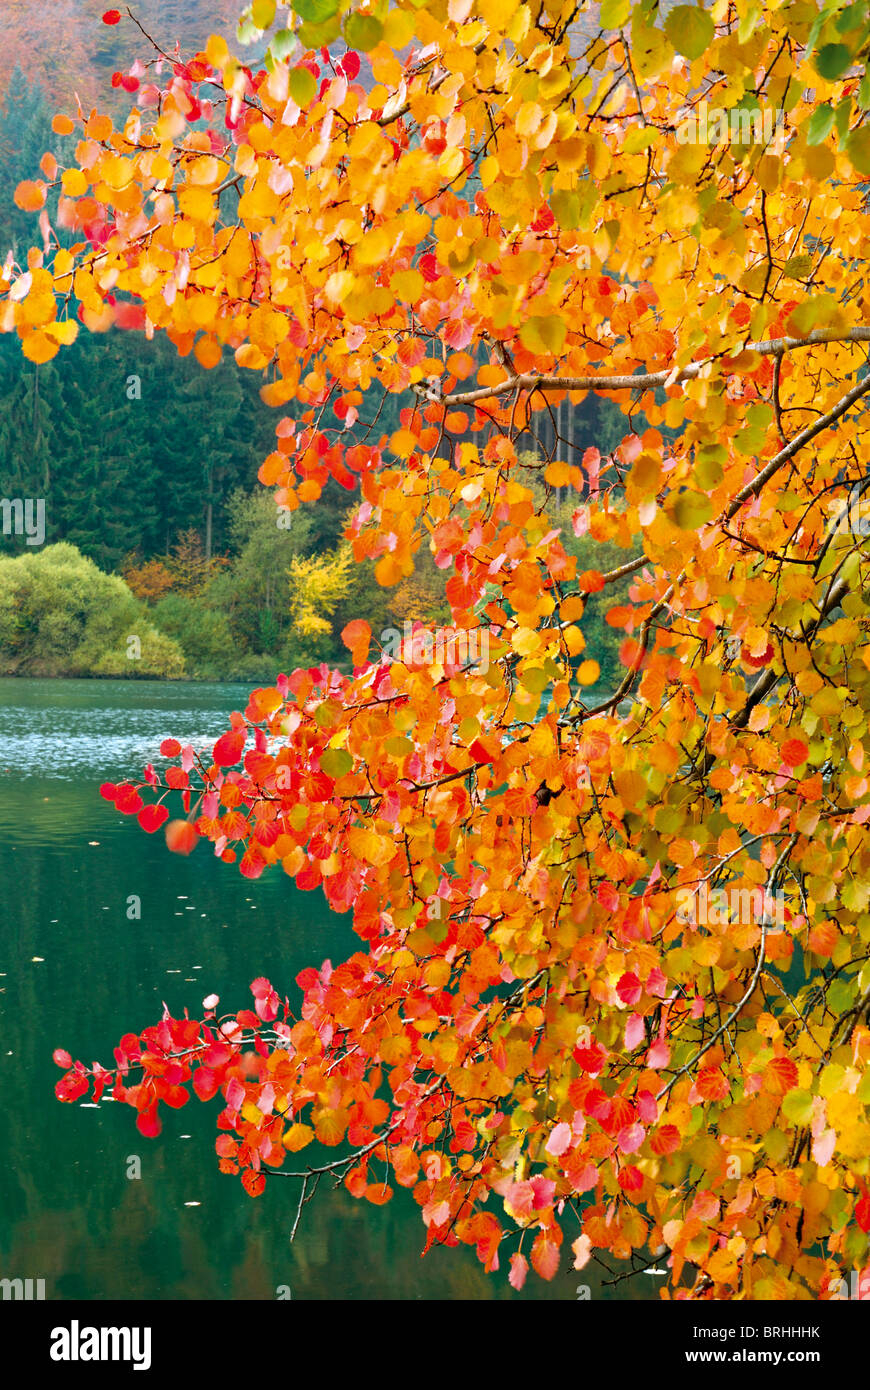 Alemania: los colores de otoño en el lago Marbach en Hessen Foto de stock